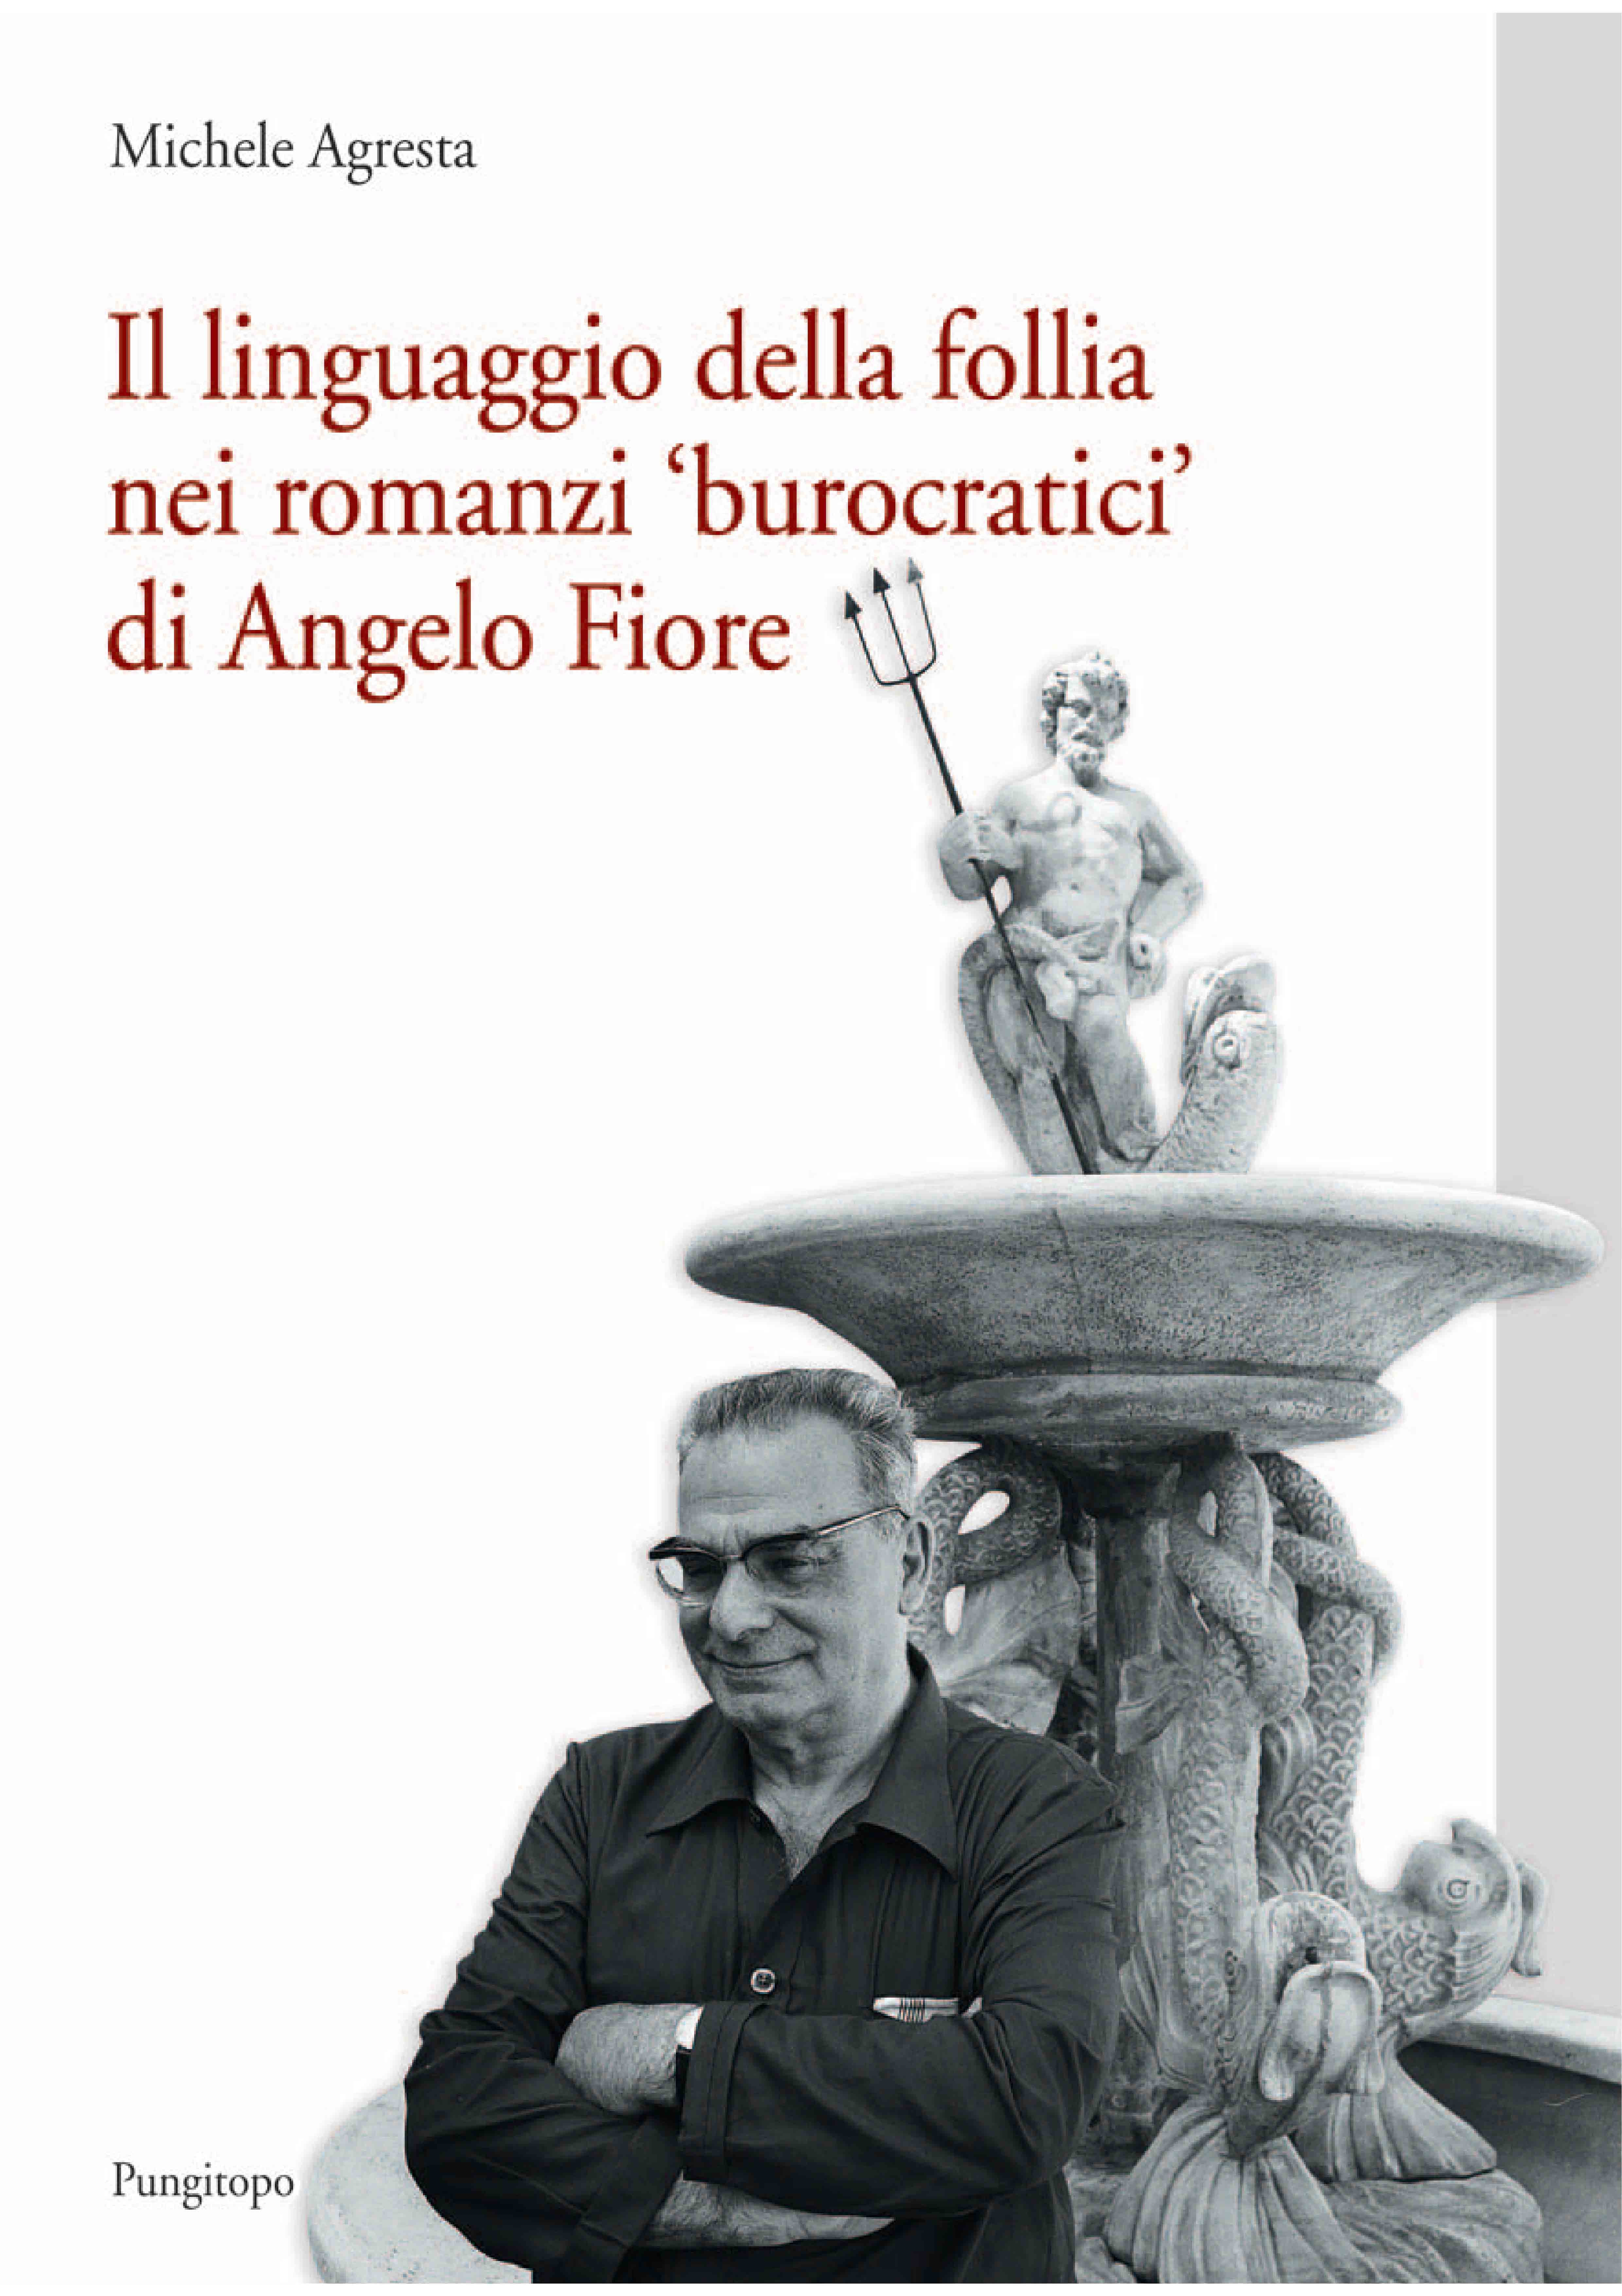 Speciale Angelo Fiore/1 - Michele Agresta "Il linguaggio della follia nei romanzi 'burocratici' di Angelo Fiore"